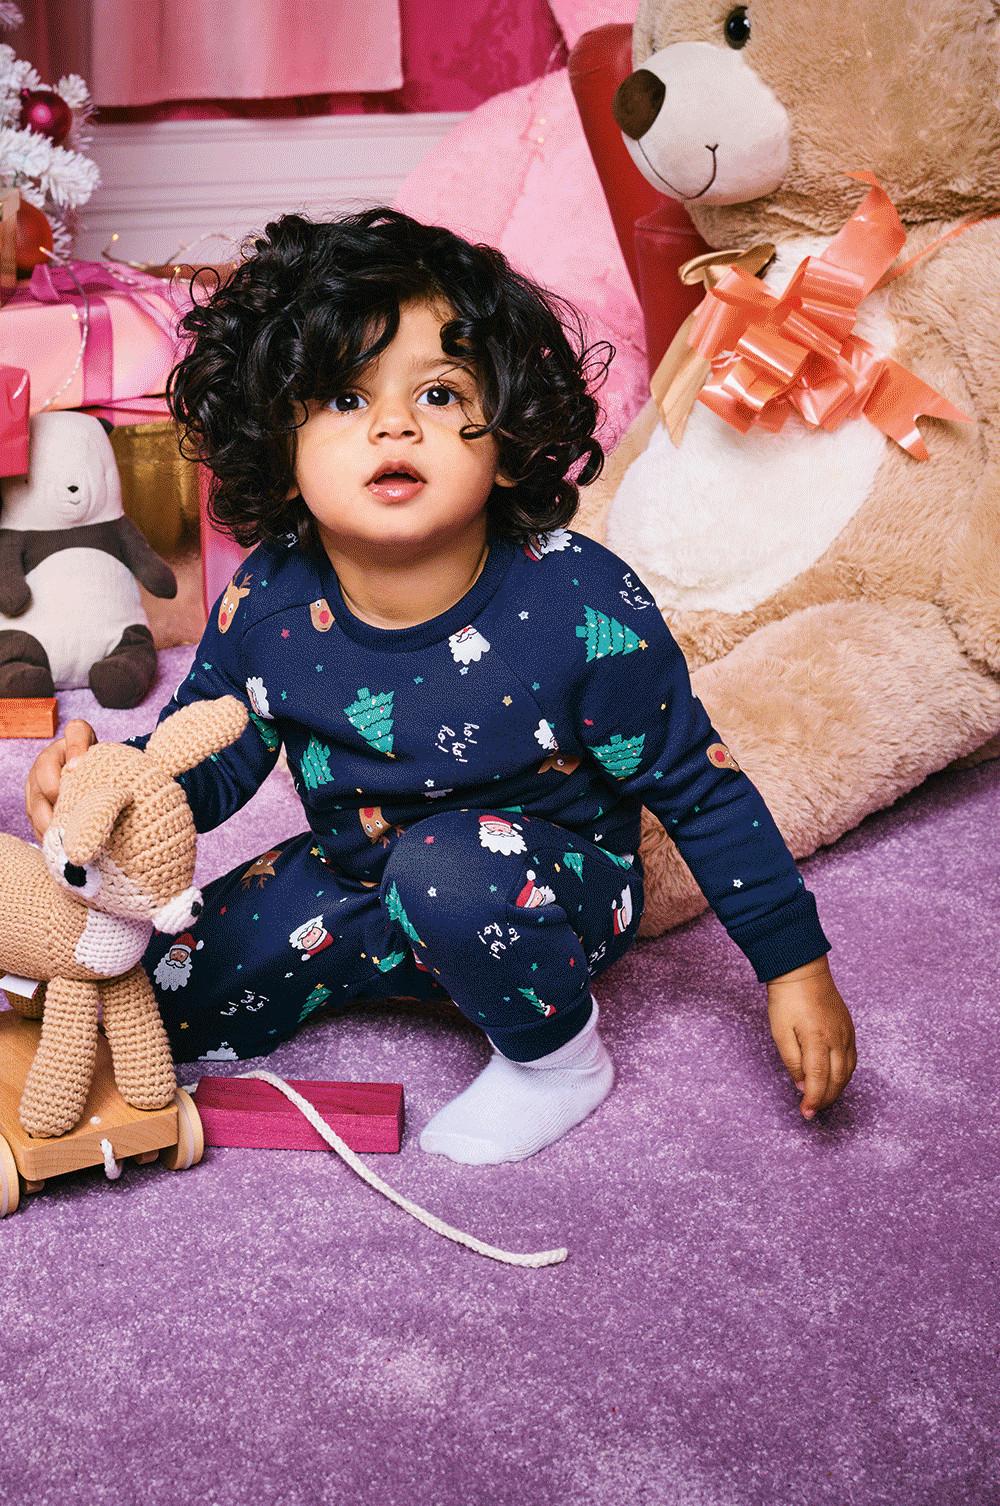 Kinderpyjamas für Weihnachten